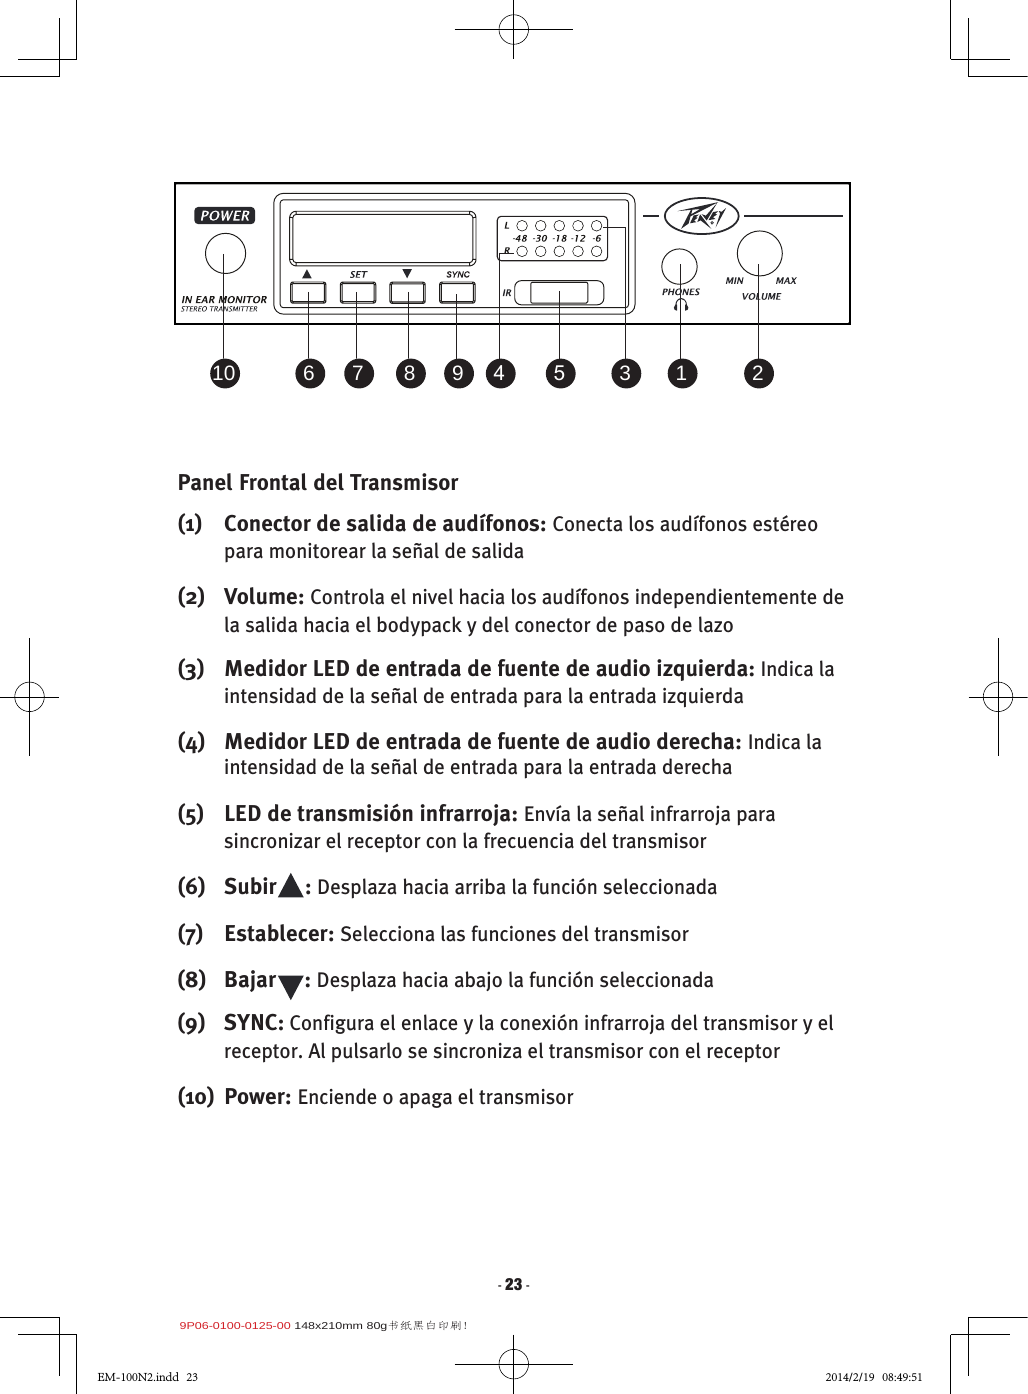 9P06-0100-0125-00 148x210mm 80g书纸黑白印刷!- 23 -Panel Frontal del Transmisor(1)  Conector de salida de audífonos: Conecta los audífonos estéreo para monitorear la señal de salida(2)  Volume: Controla el nivel hacia los audífonos independientemente de la salida hacia el bodypack y del conector de paso de lazo(3)  Medidor LED de entrada de fuente de audio izquierda: Indica la intensidad de la señal de entrada para la entrada izquierda(4)  Medidor LED de entrada de fuente de audio derecha: Indica la intensidad de la señal de entrada para la entrada derecha(5)  LED de transmisión infrarroja: Envía la señal infrarroja para sincronizar el receptor con la frecuencia del transmisor(6)  Subir     : Desplaza hacia arriba la función seleccionada(7)  Establecer: Selecciona las funciones del transmisor(8)   Bajar     : Desplaza hacia abajo la función seleccionada(9)  SYNC: Configura el enlace y la conexión infrarroja del transmisor y el receptor. Al pulsarlo se sincroniza el transmisor con el receptor(10)  Power: Enciende o apaga el transmisor2 1 3 5 4 9 8 7 61 021354987610EM-100N2.indd   23 2014/2/19   08:49:51